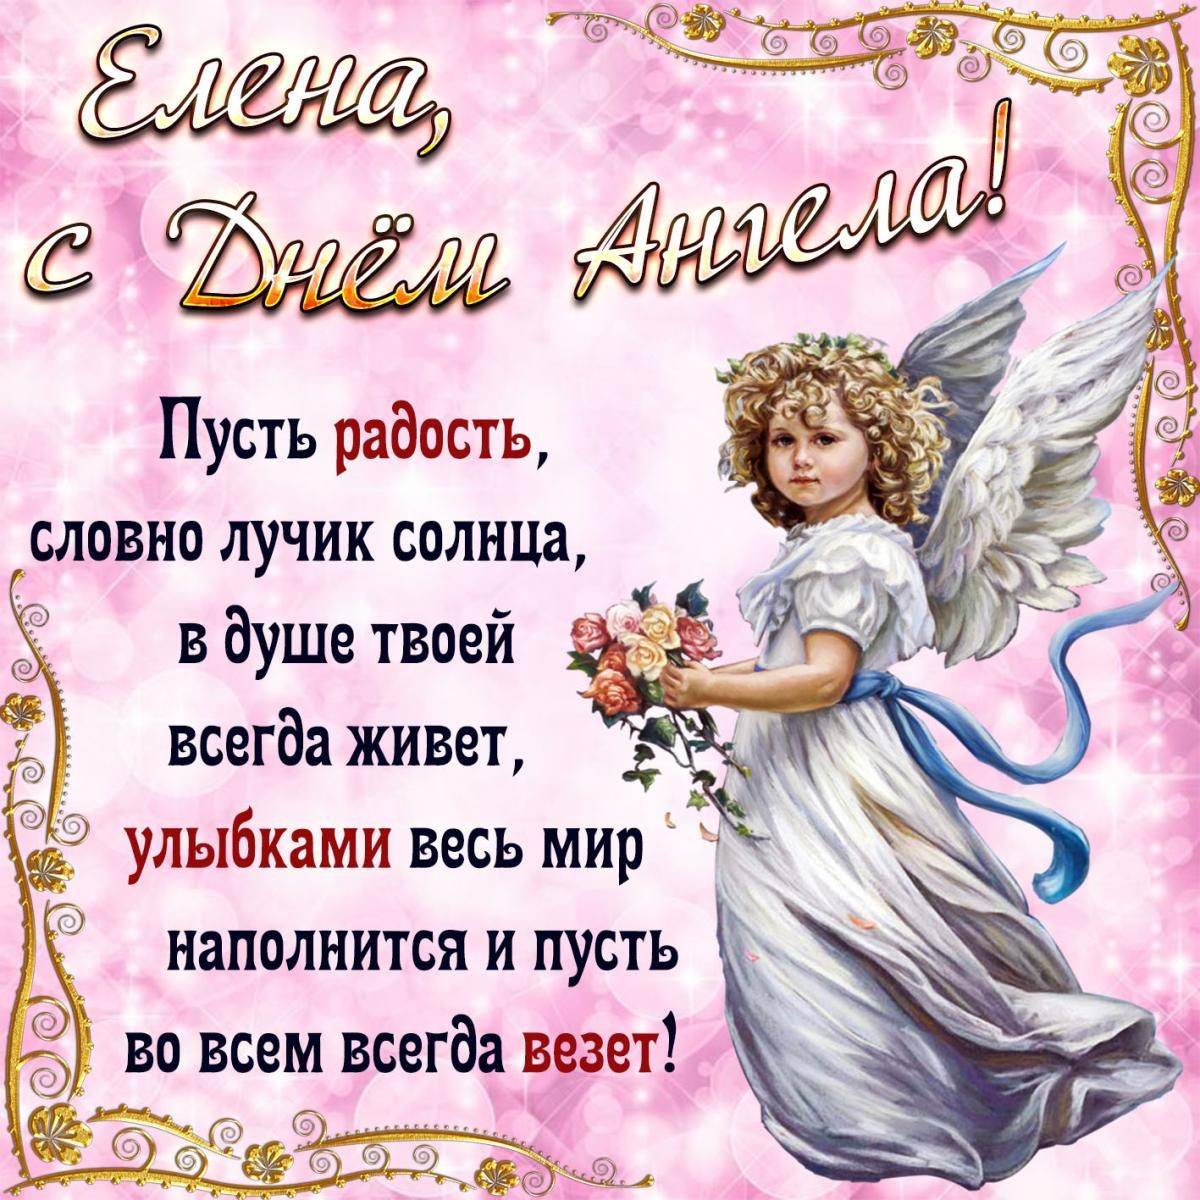 28 января - Именины, День ангела Елены: красивые поздравления, картинки и душевные открытки Еленам именинницам от всей души на 28 января